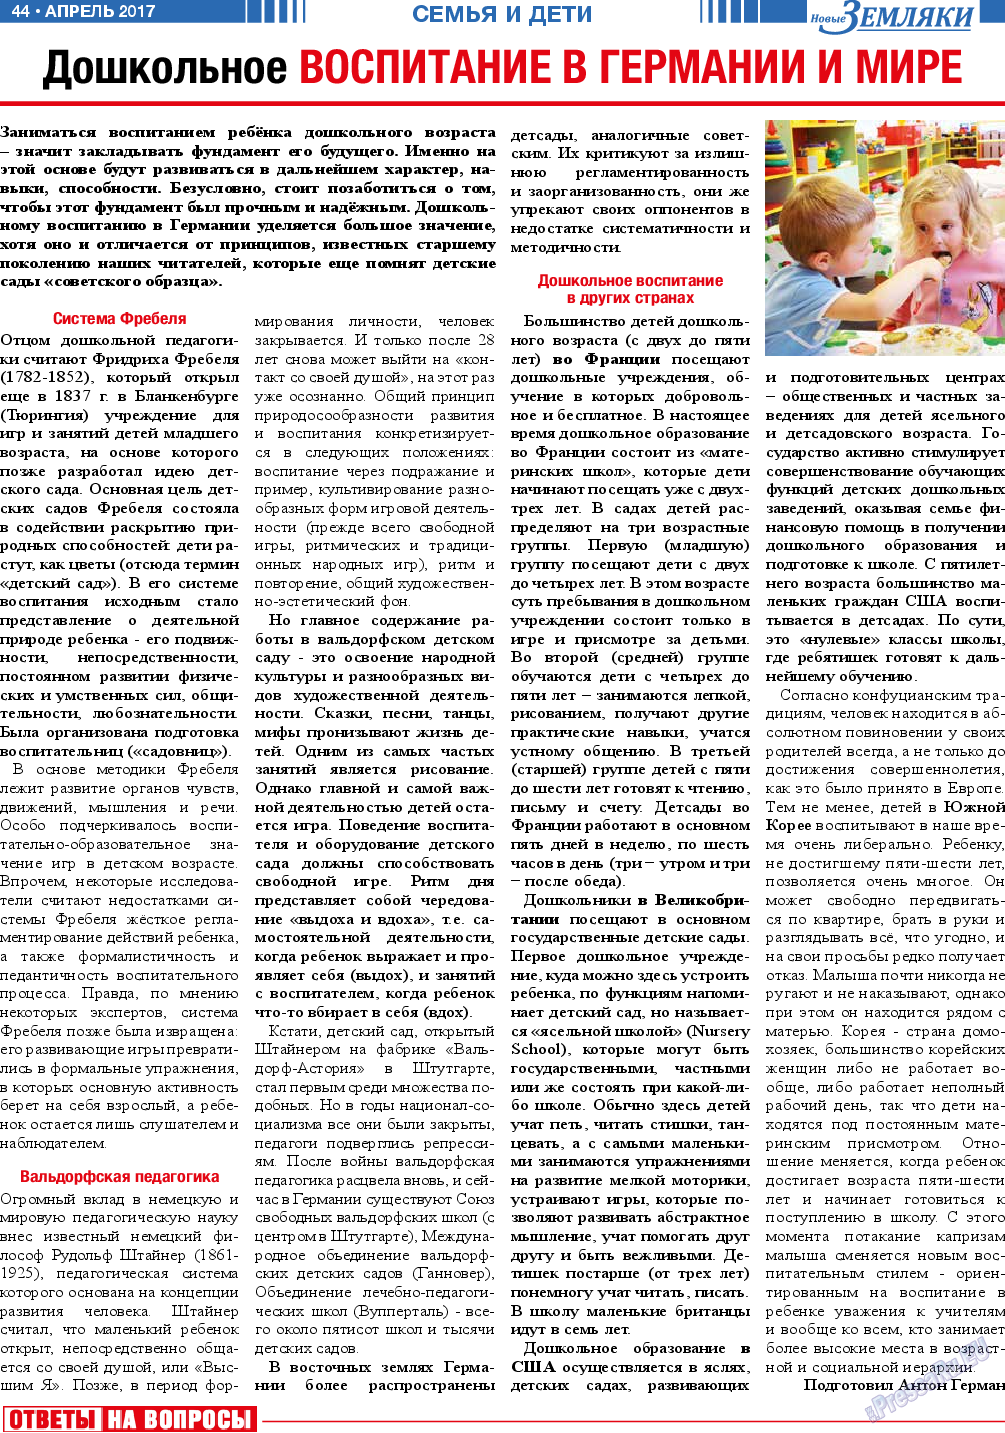 Новые Земляки, газета. 2017 №4 стр.44